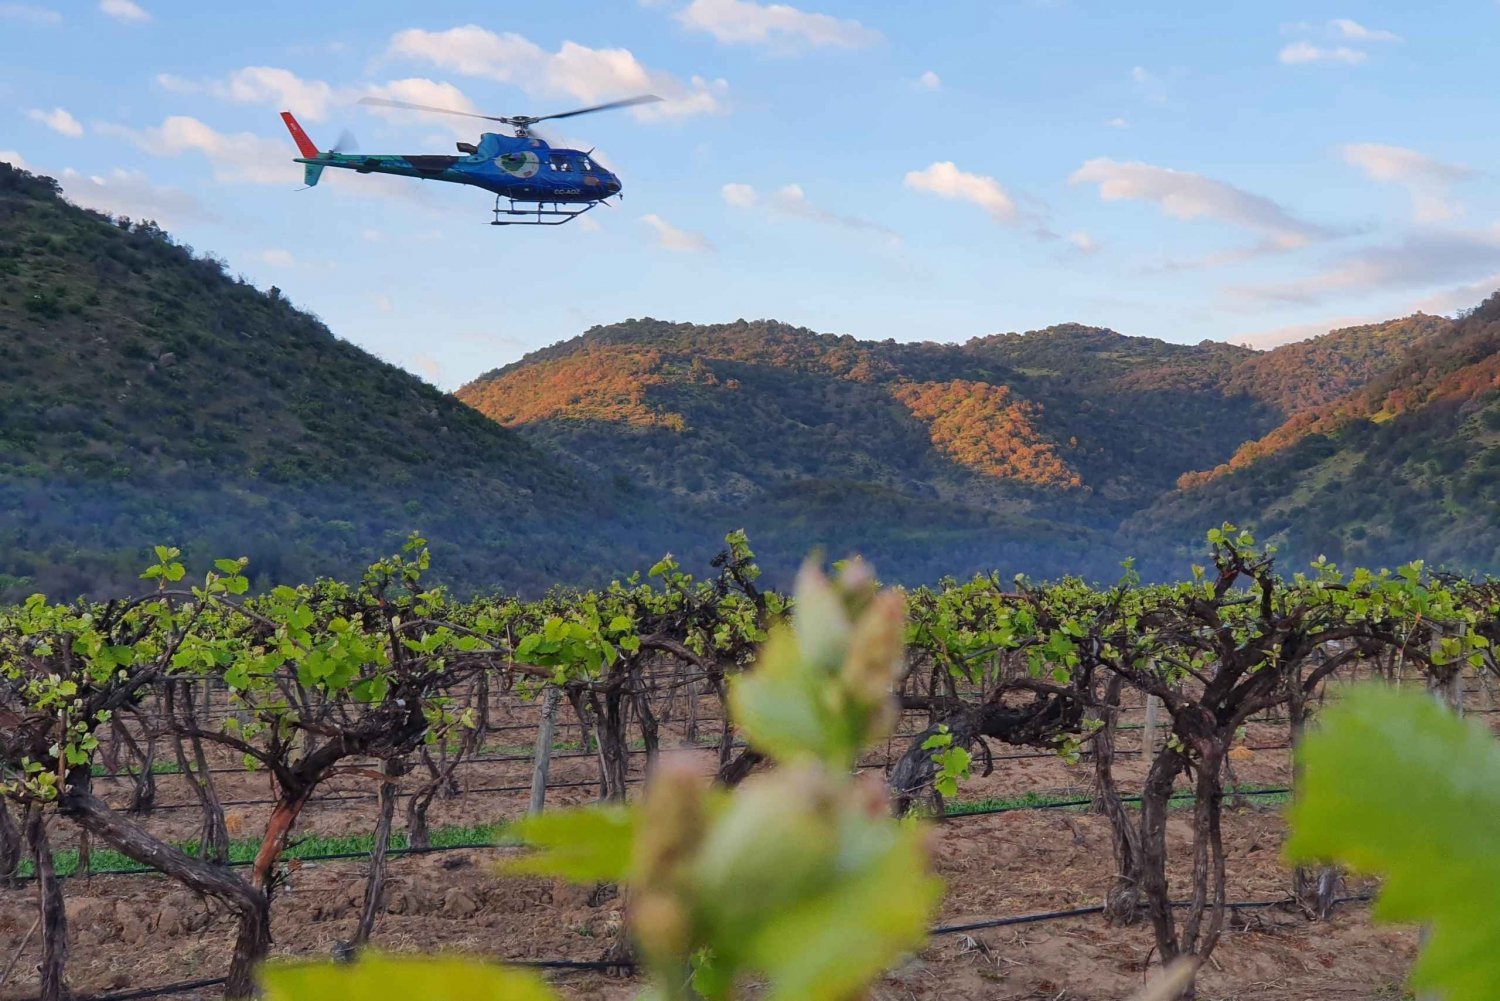 Vol privé en hélicoptère vers un domaine viticole avec vin mousseux